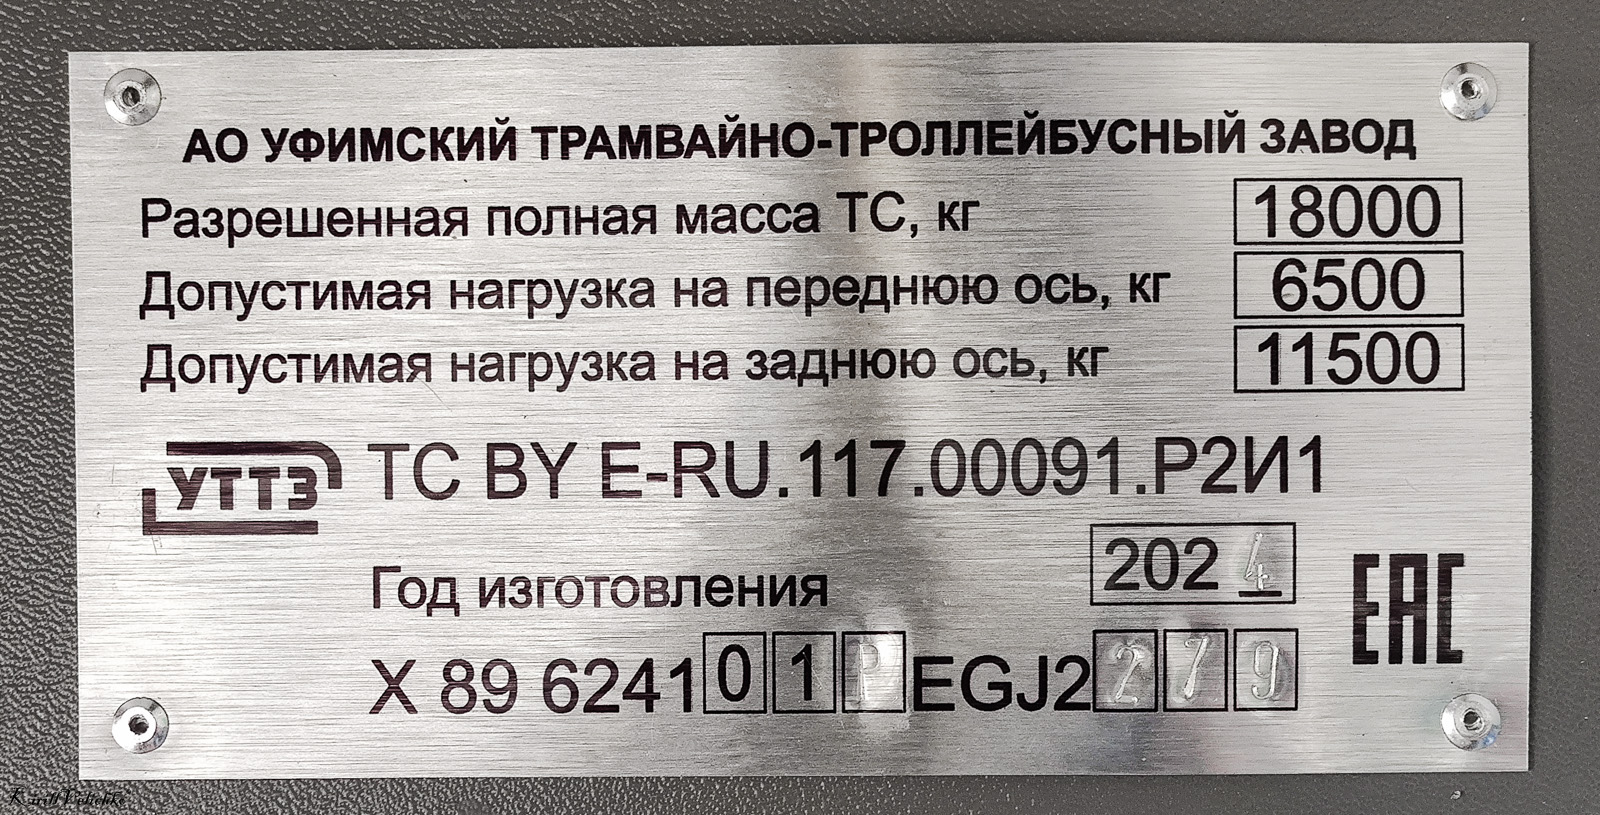 Новосибирск, УТТЗ-6241.01 «Горожанин» № 3531